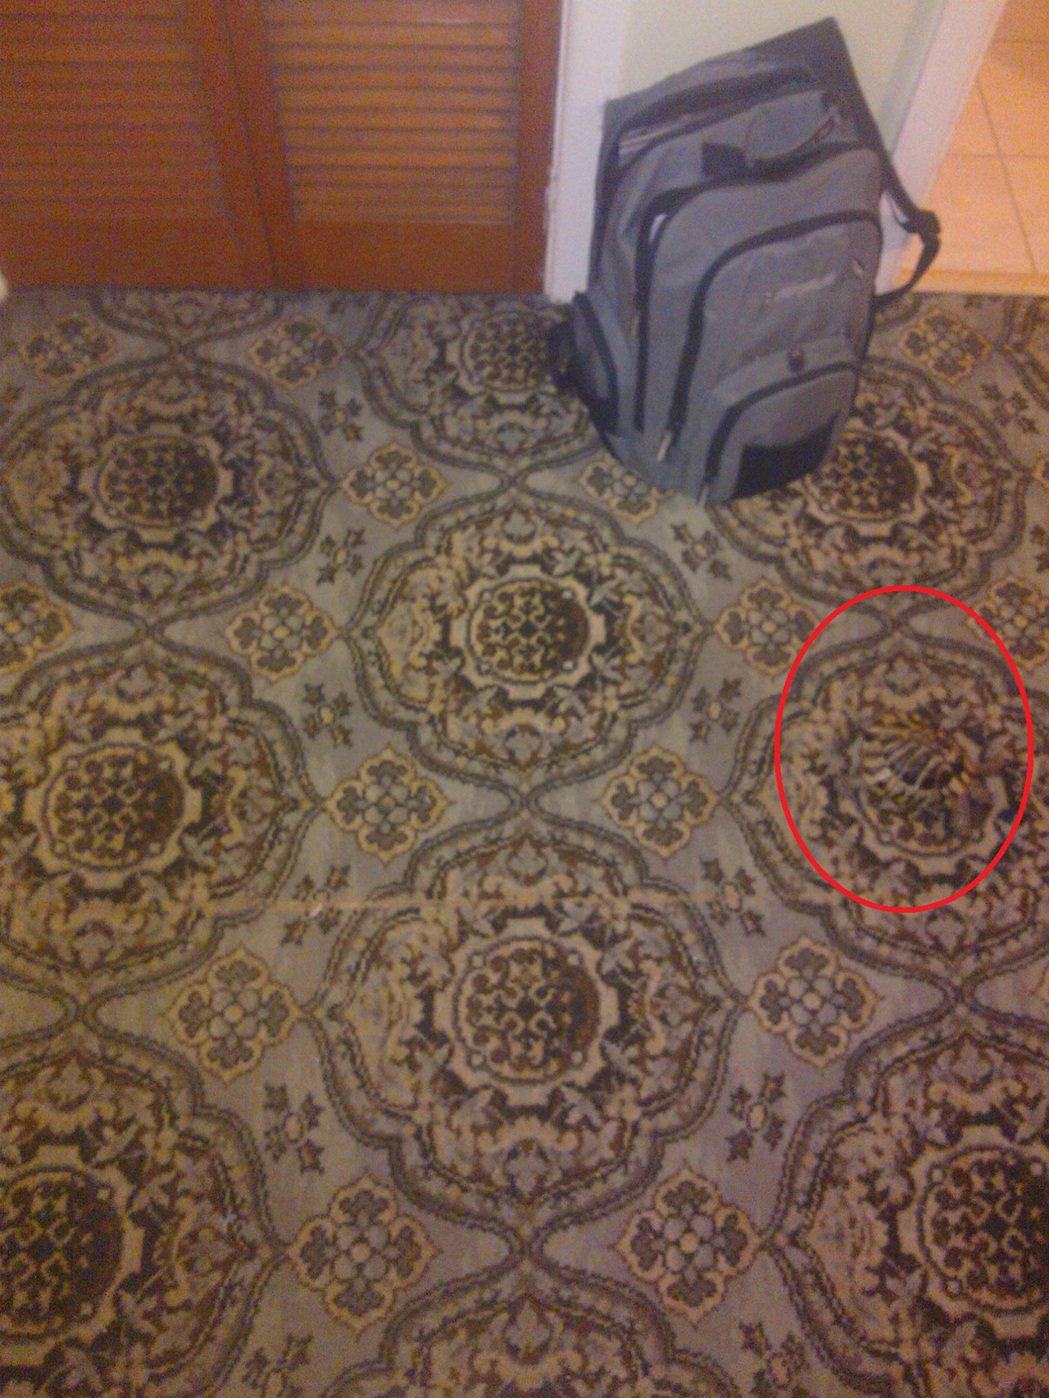 結果烏龜完美的跟地毯融合了(紅圈圈處)。 (圖/取自Reddit)